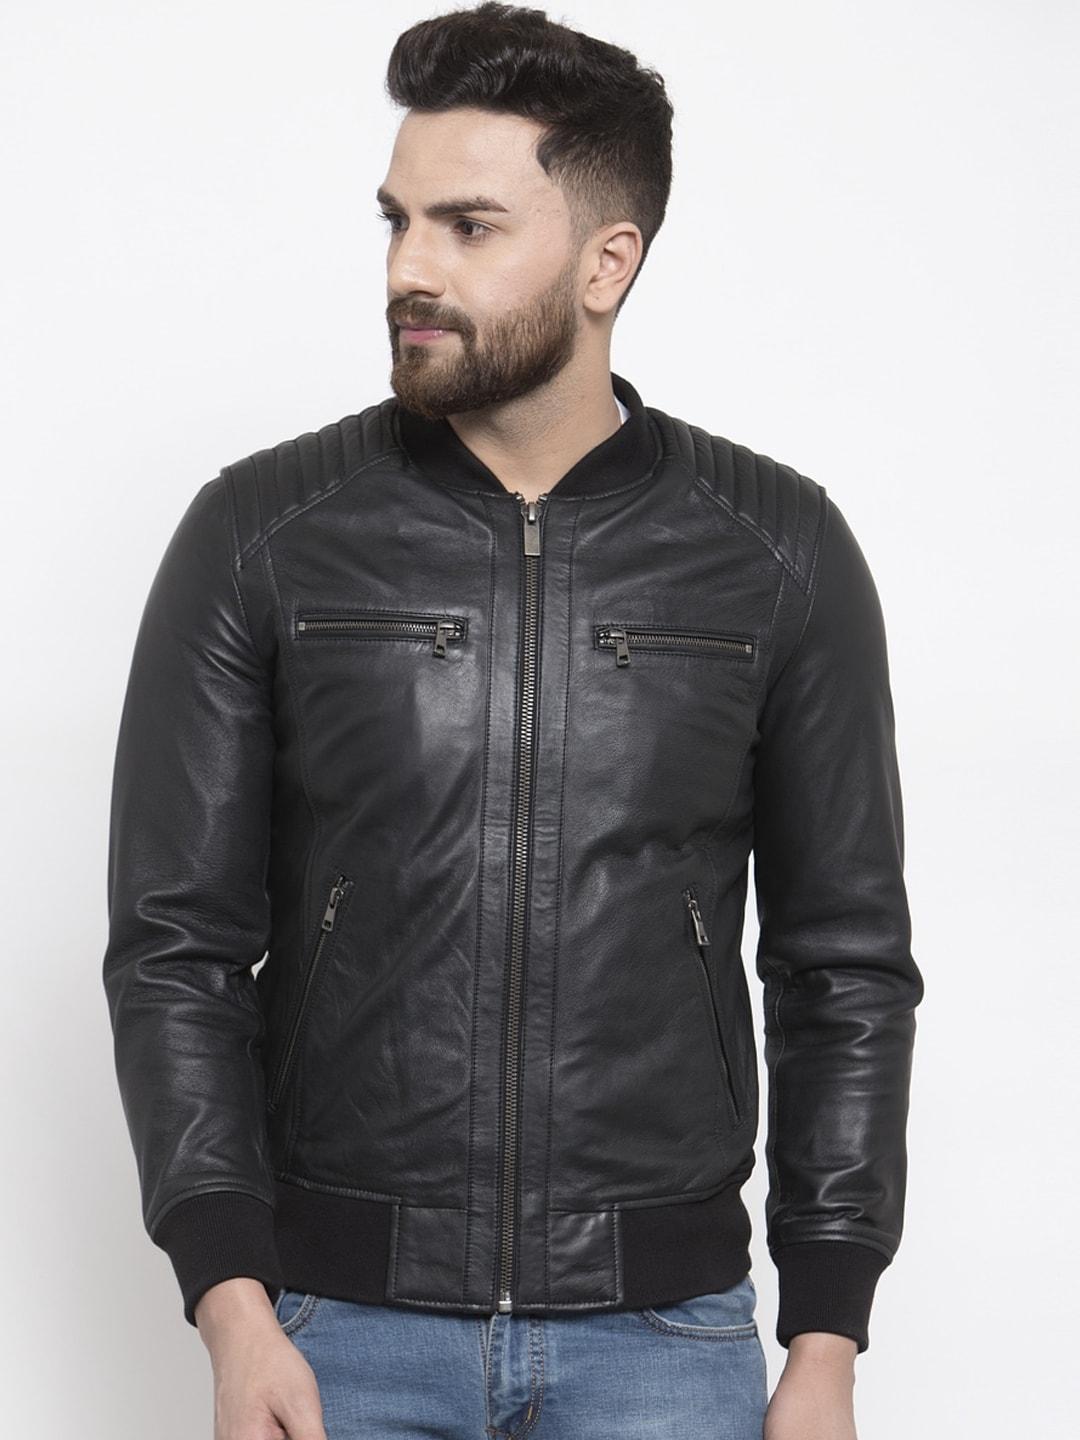 WELBAWT Men Black Leather Jacket